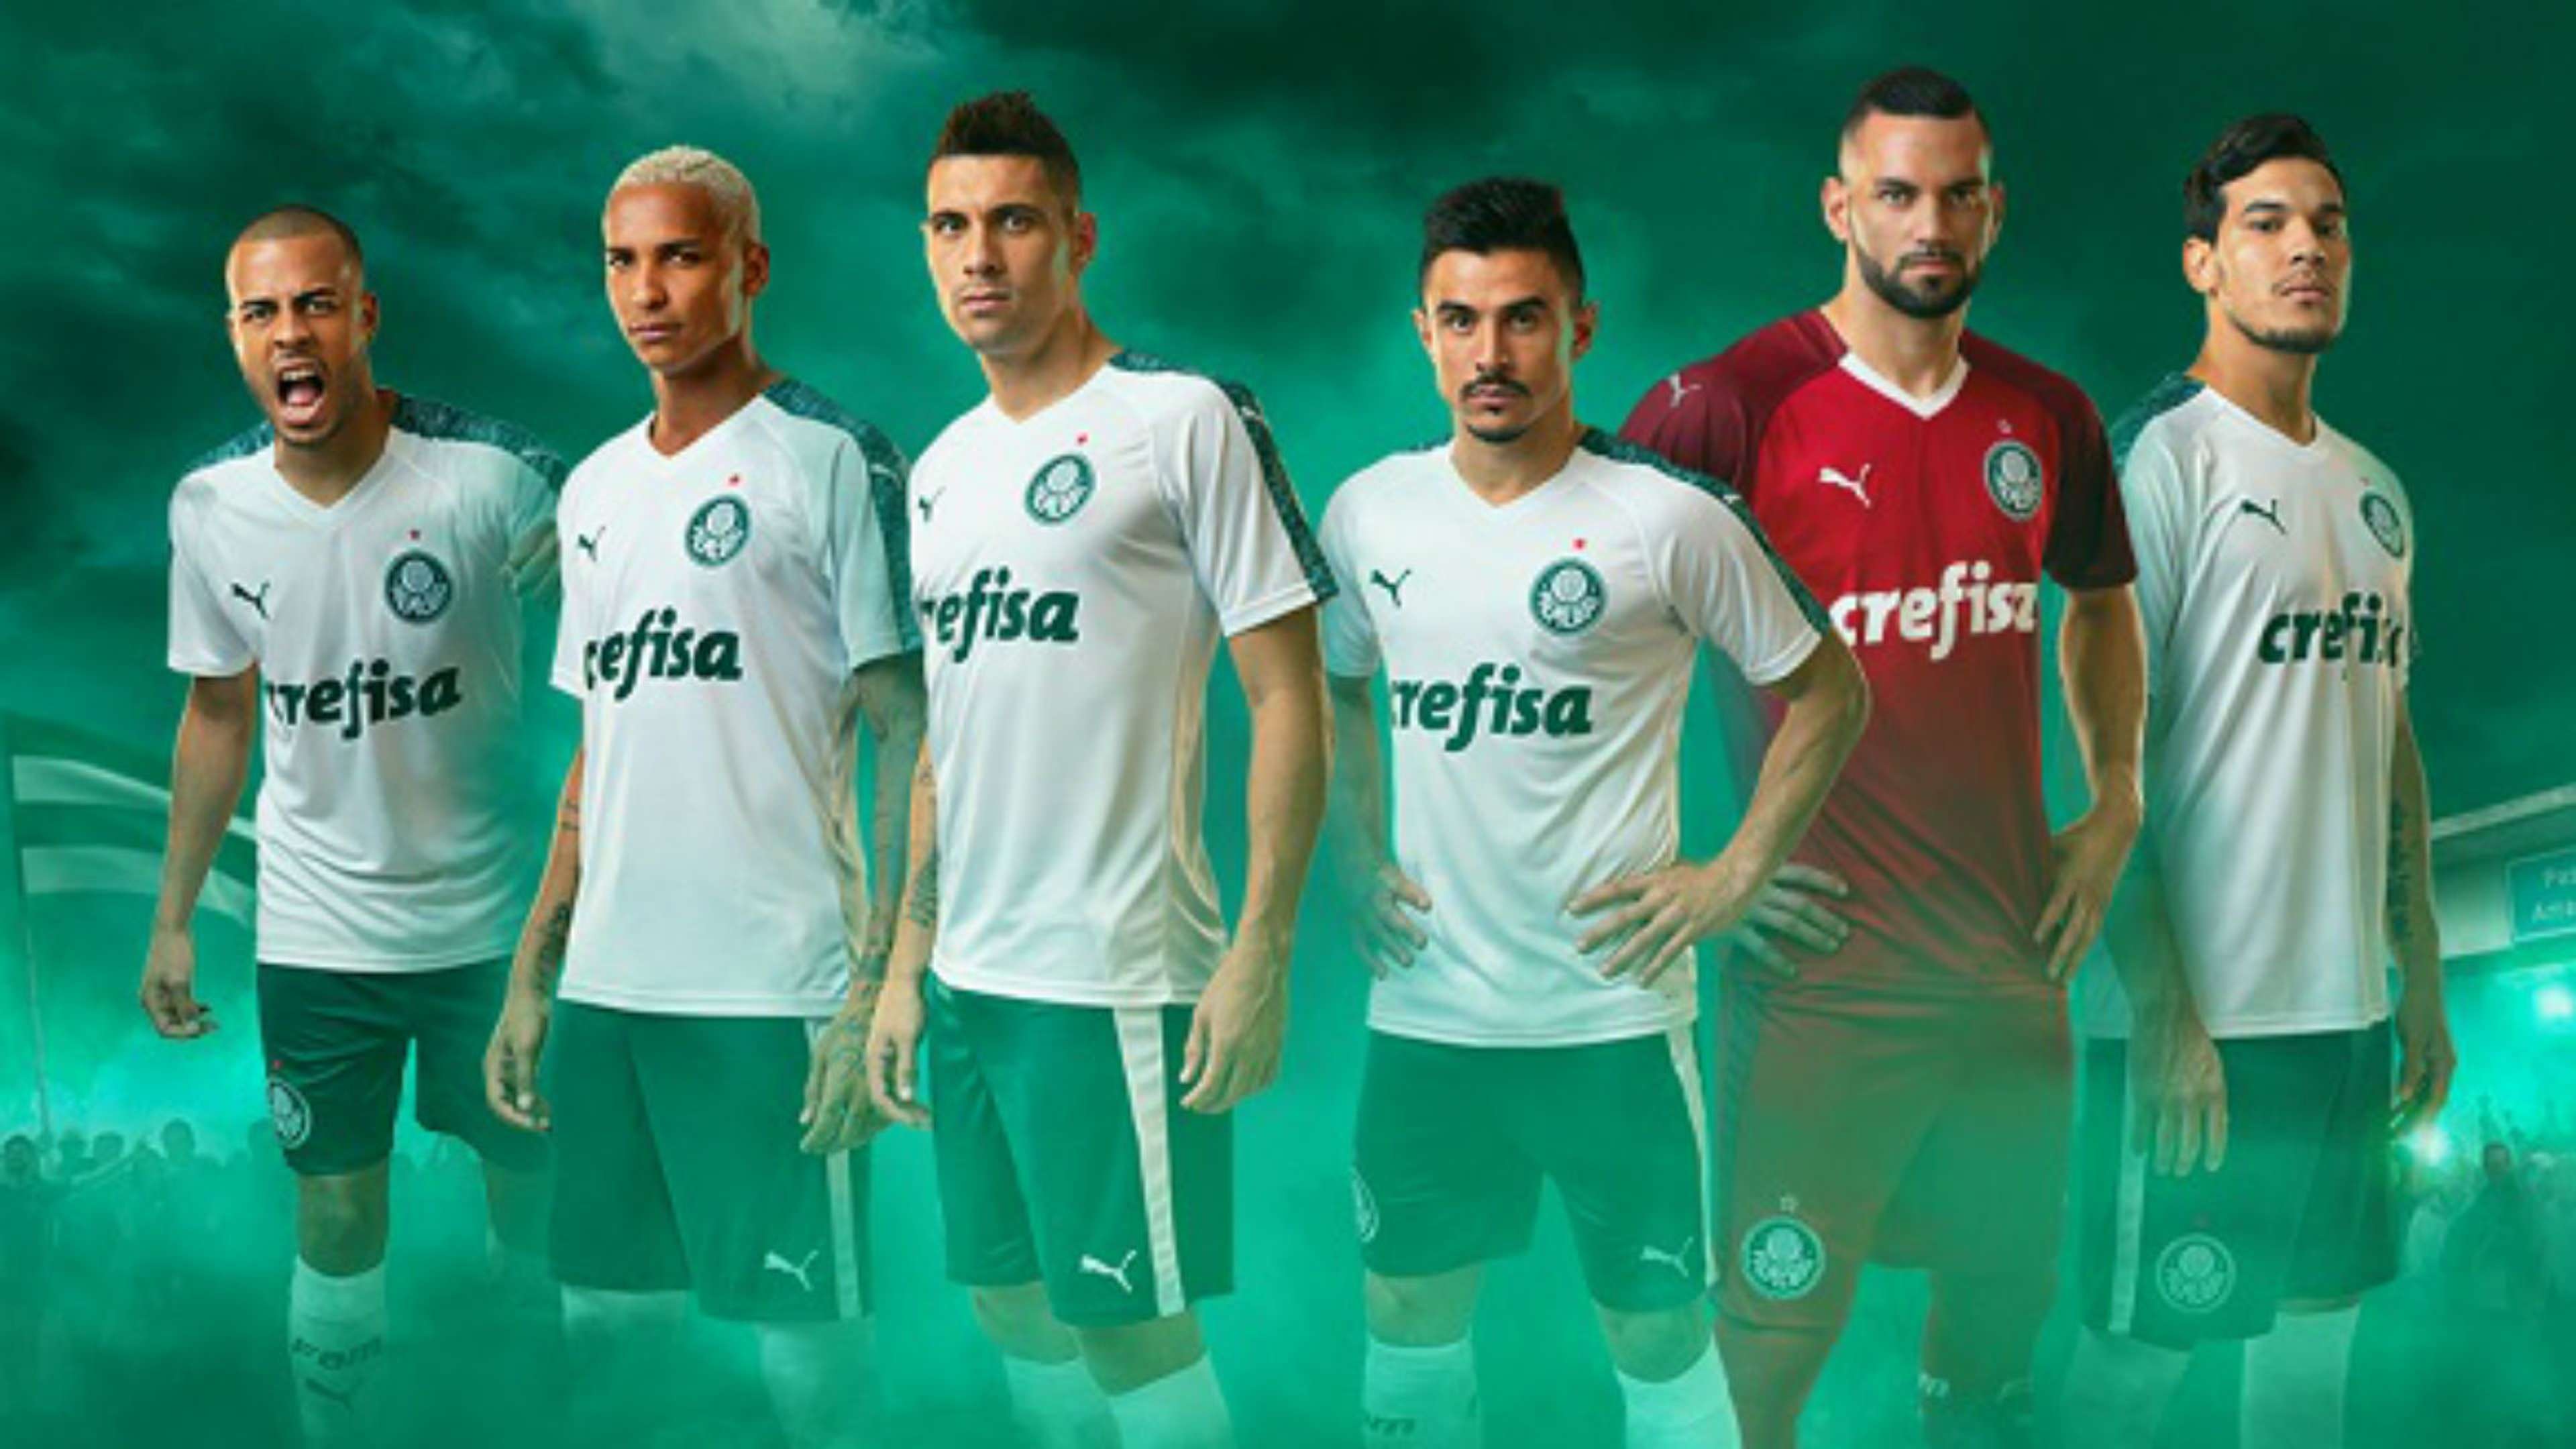 Palmeiras camisa Puma 2019 01 01 2019